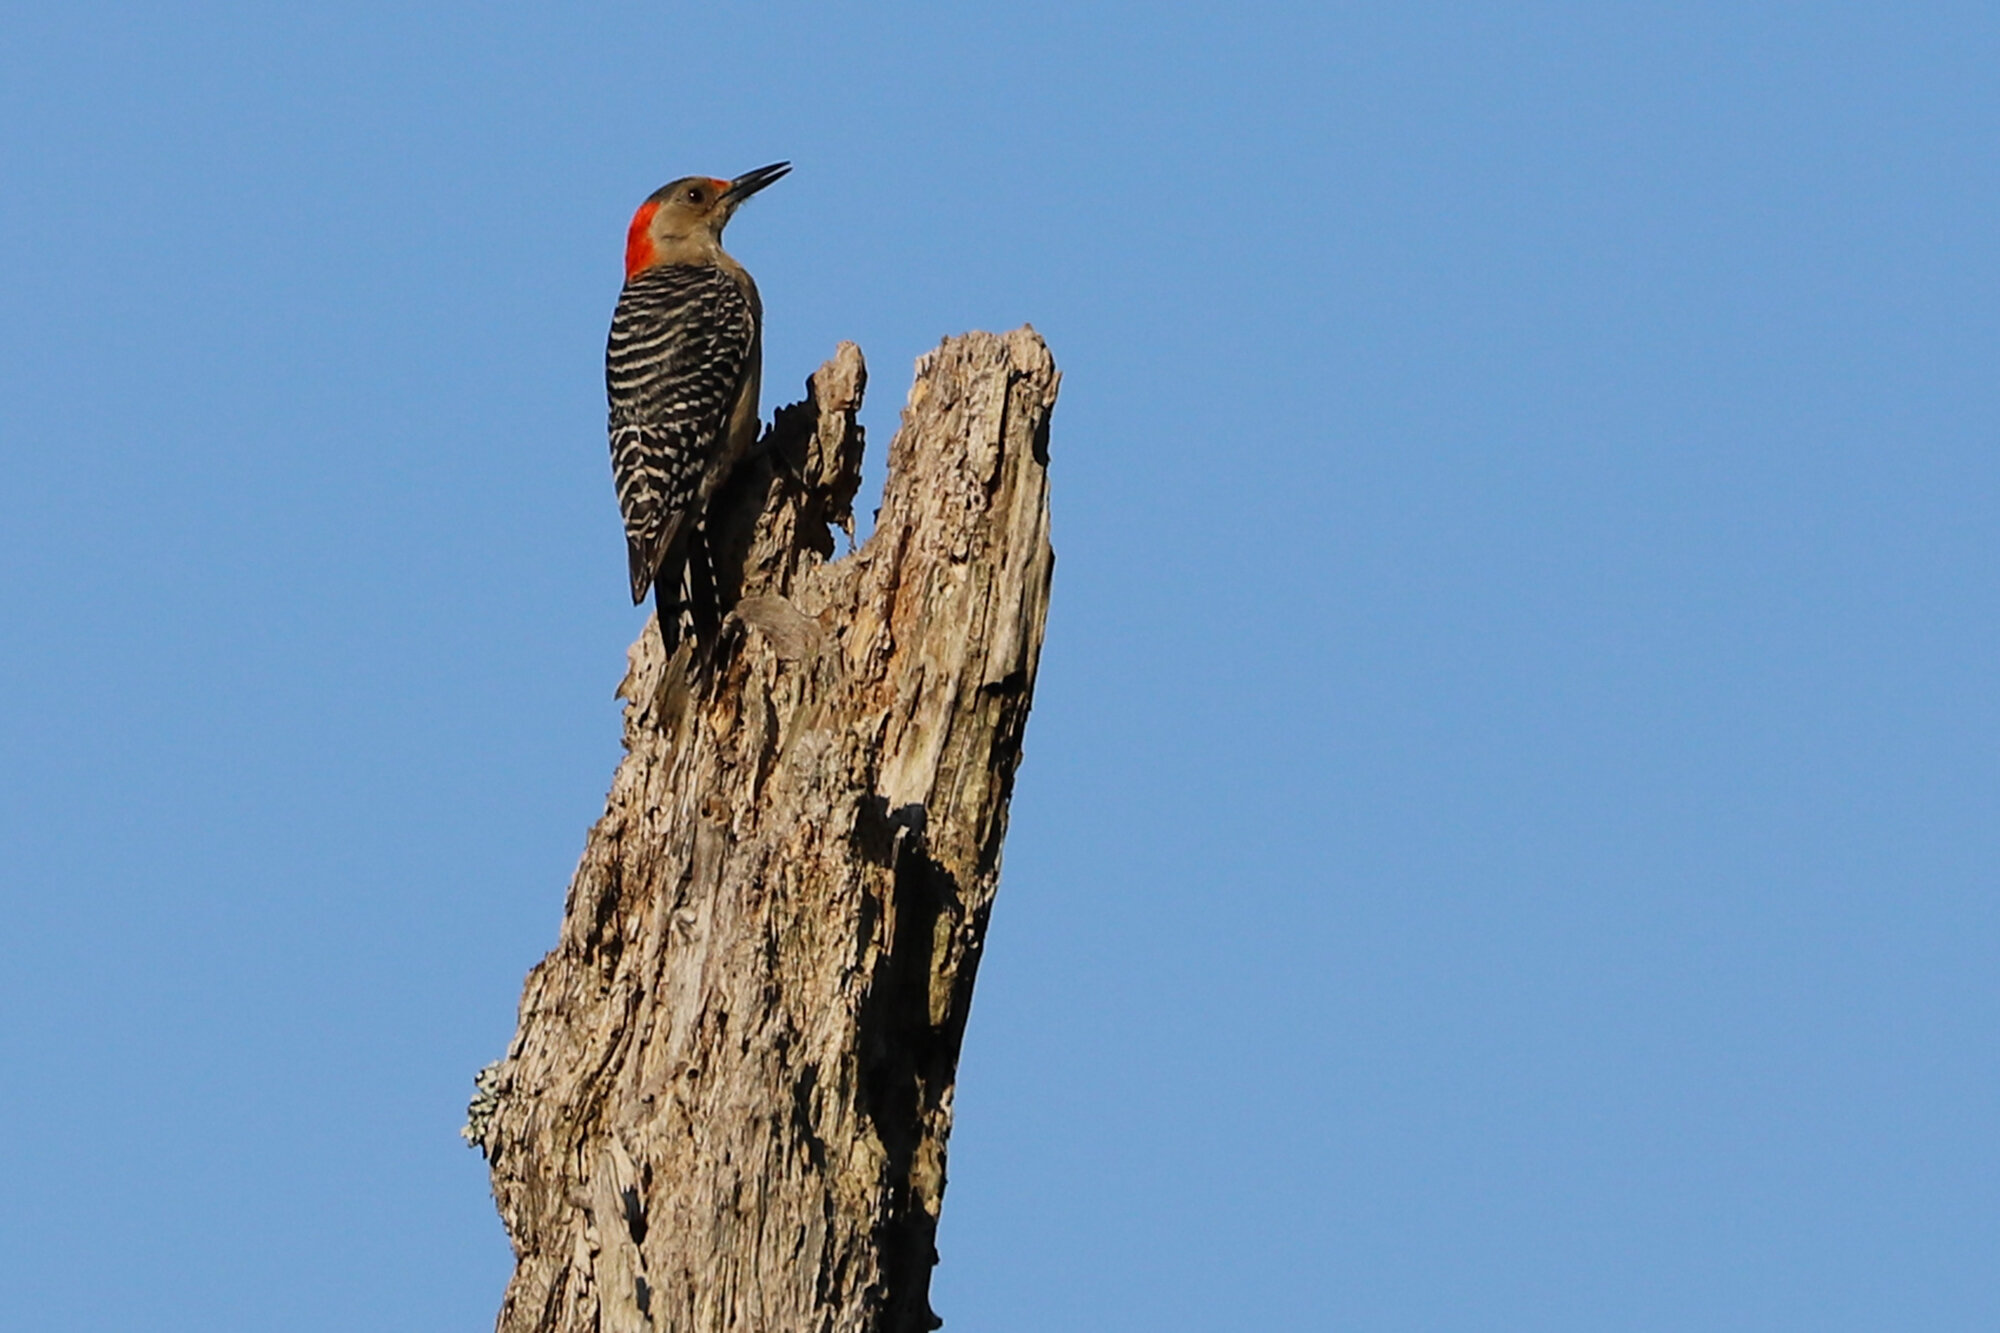  Red-bellied Woodpecker / First Landing SP / 3 Jul 